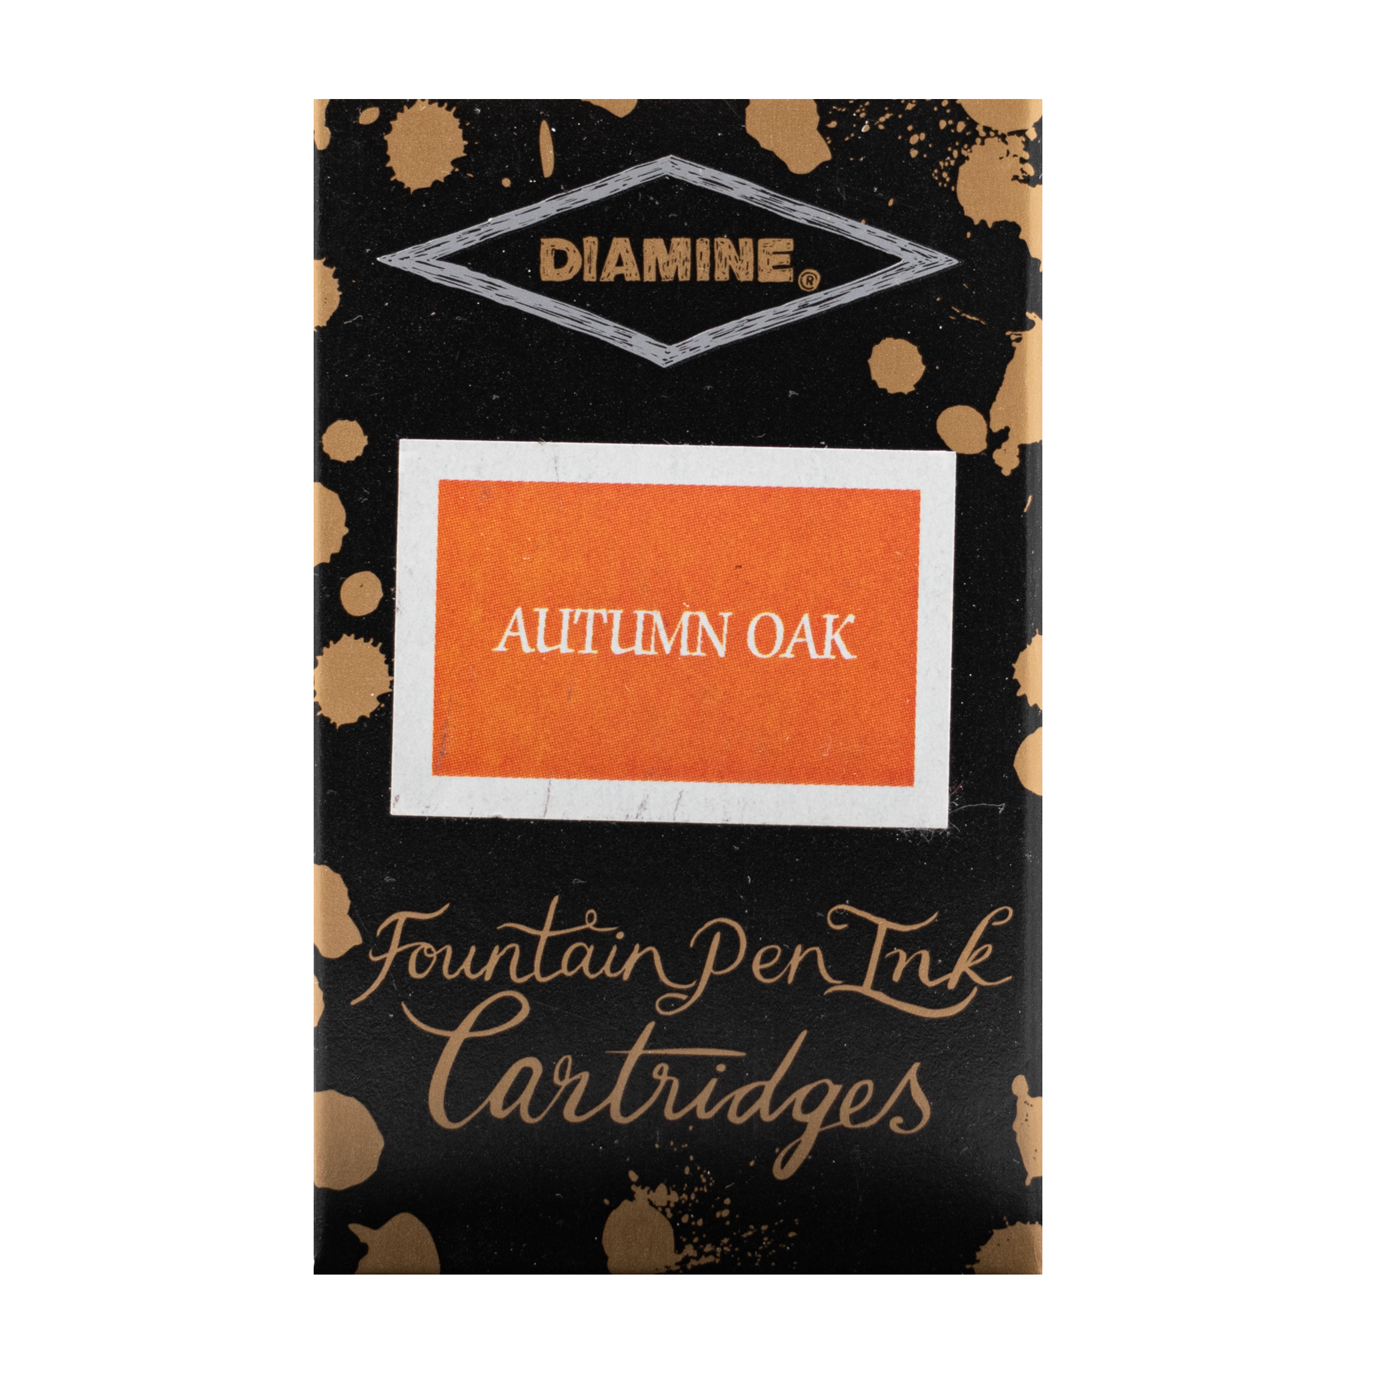 Diamine Autumn Oak